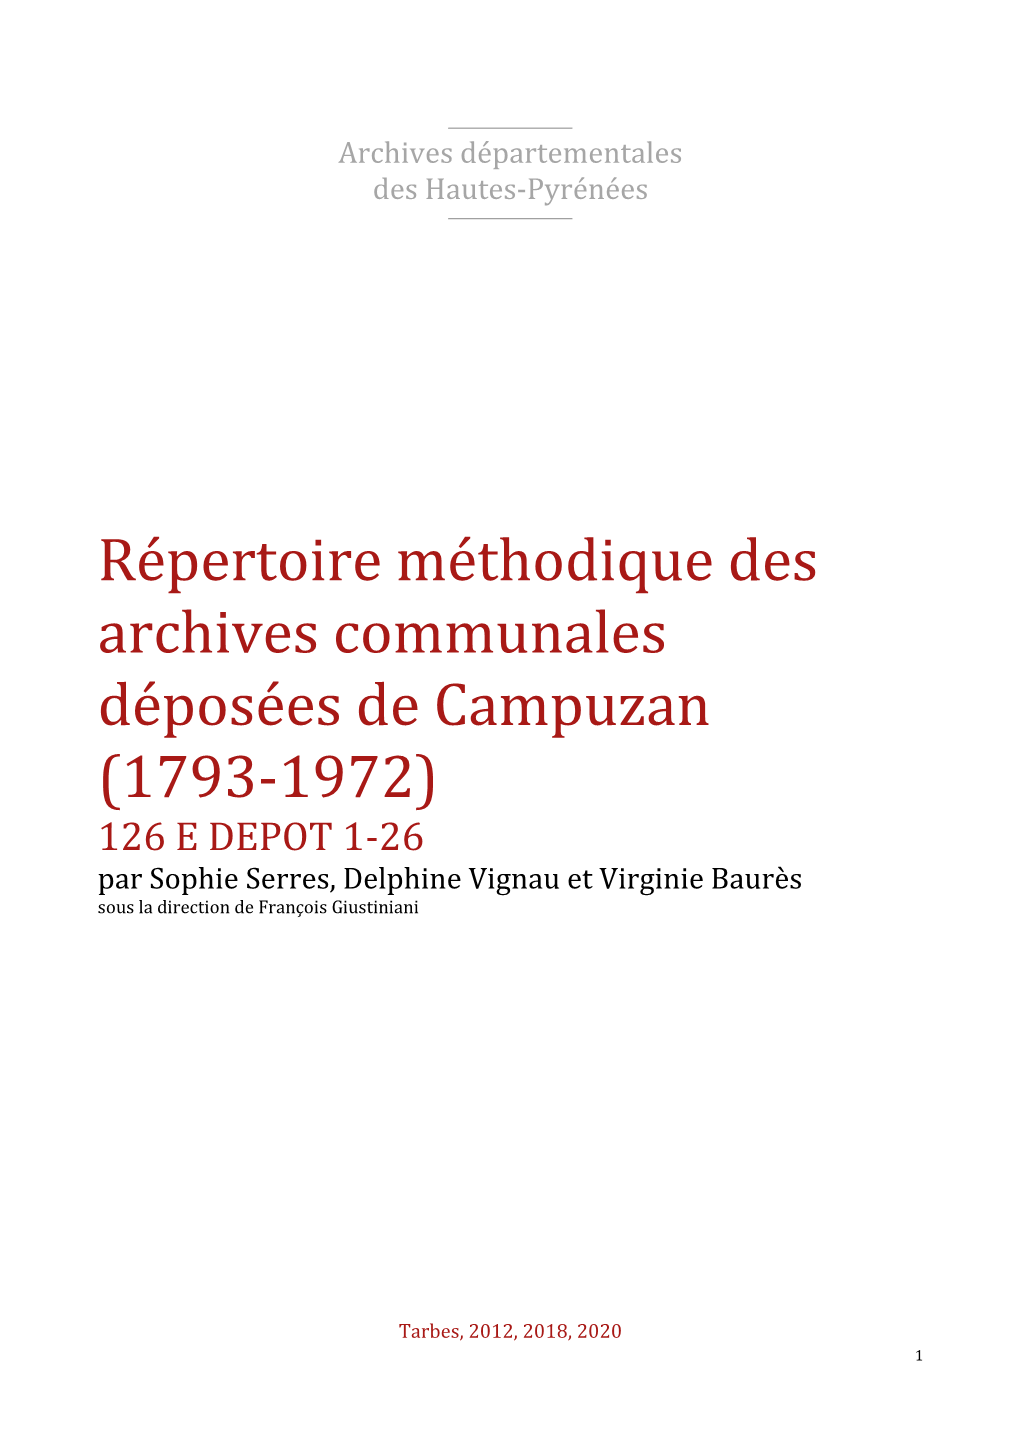 Répertoire Des Archives Déposées De Campuzan